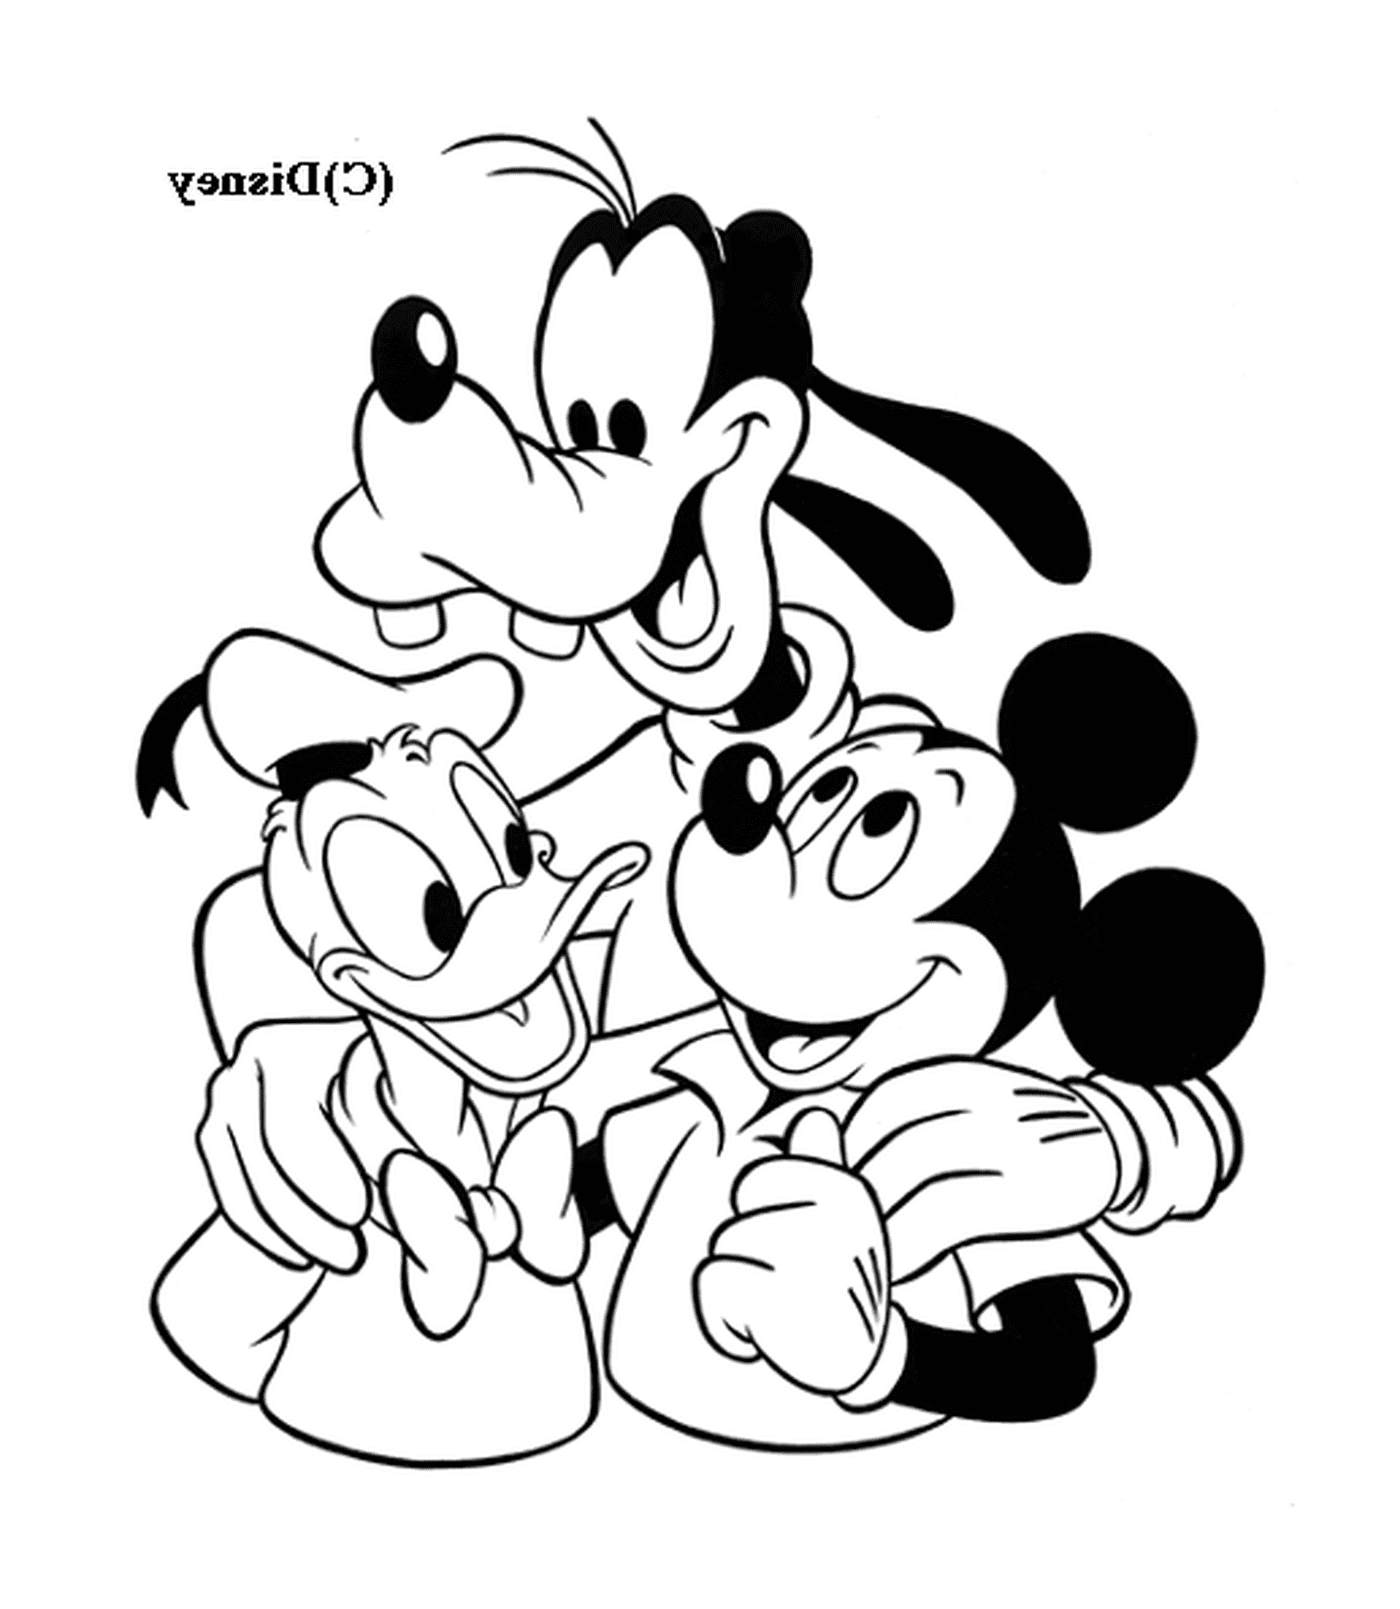   Mickey avec ses amis Dingo et Donald : groupe de Dingo, Mickey Mouse et Minnie Mouse 